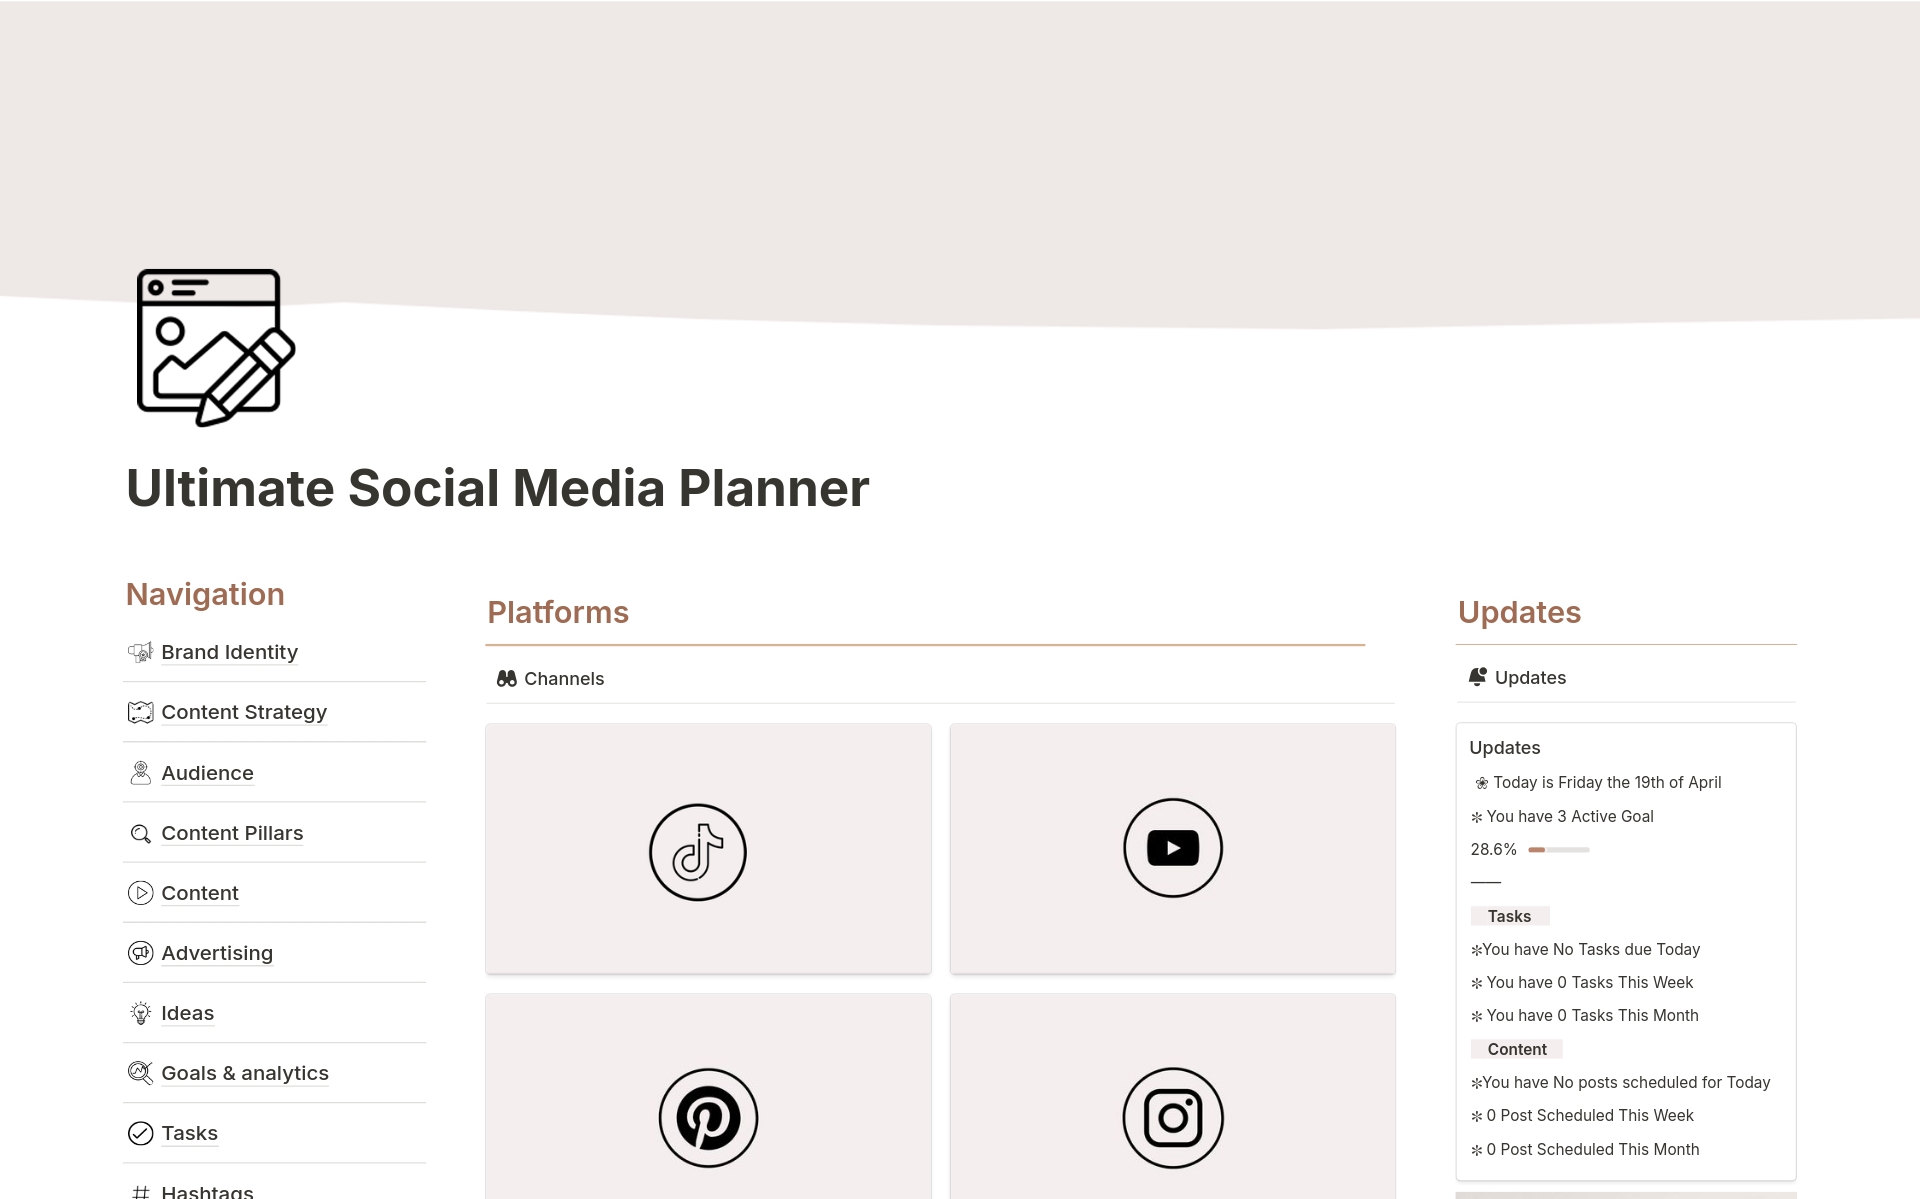 Eine Vorlagenvorschau für Social Media Content Planner